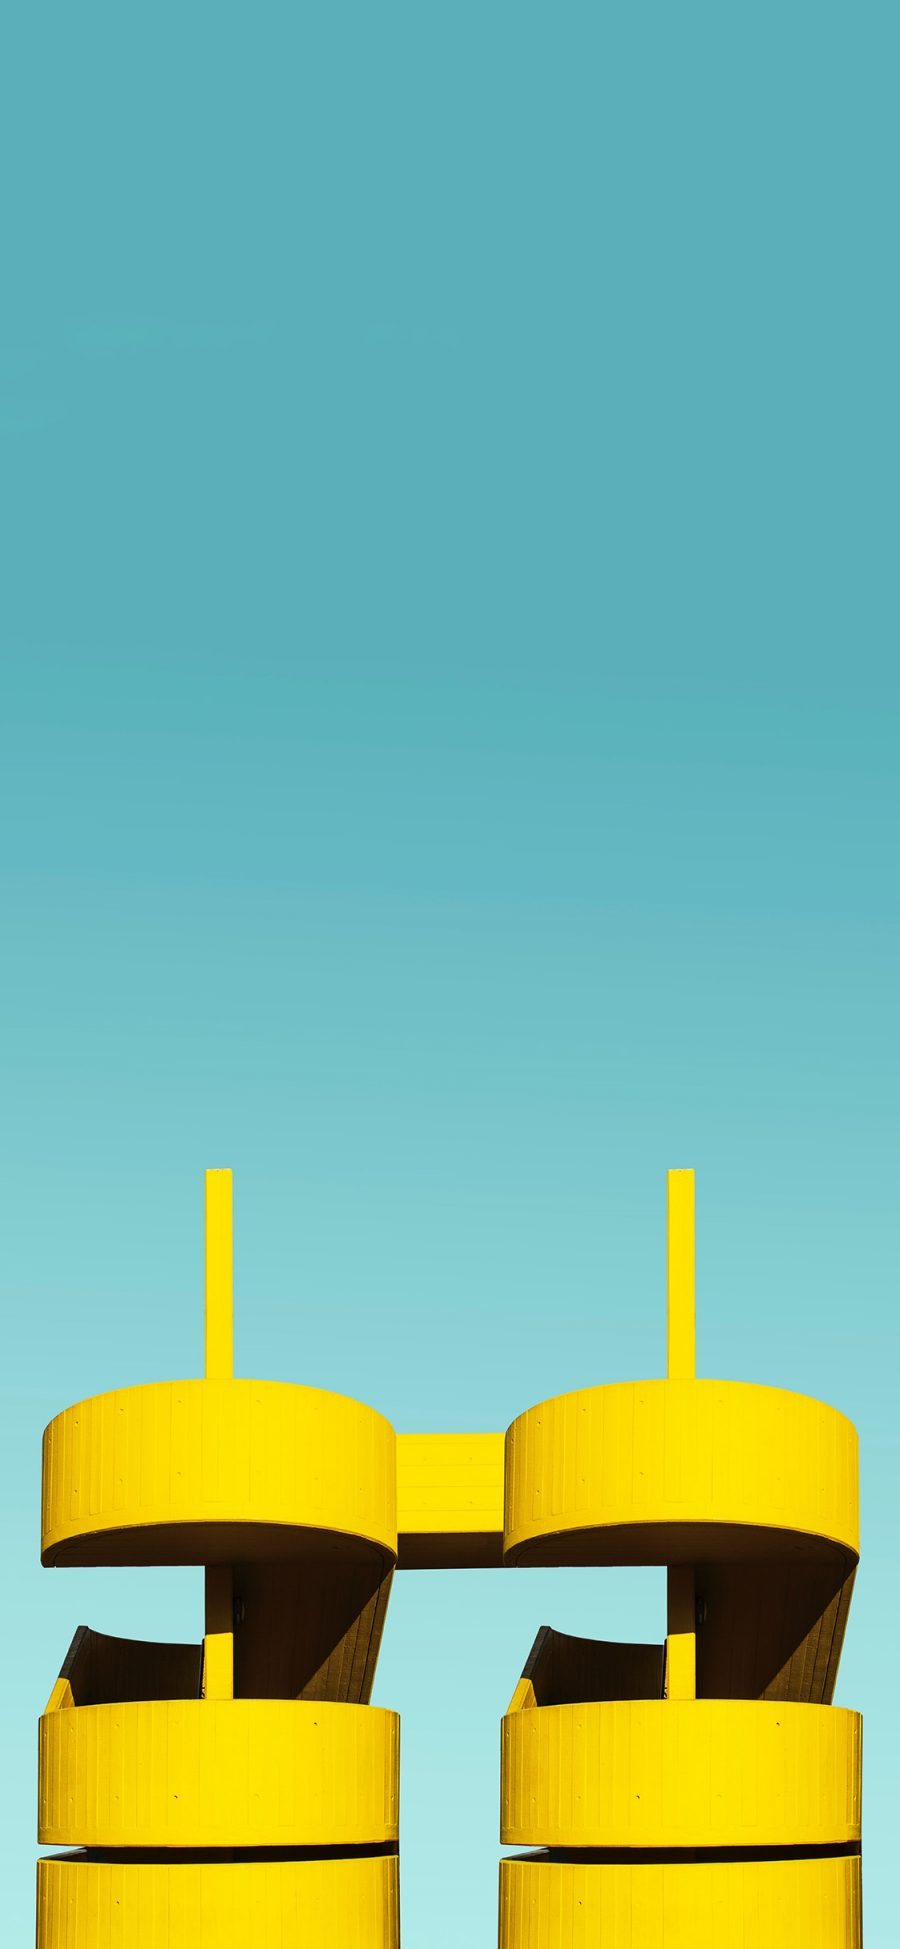 [2436×1125]建筑 圆柱体 设计感 黄色 苹果手机壁纸图片